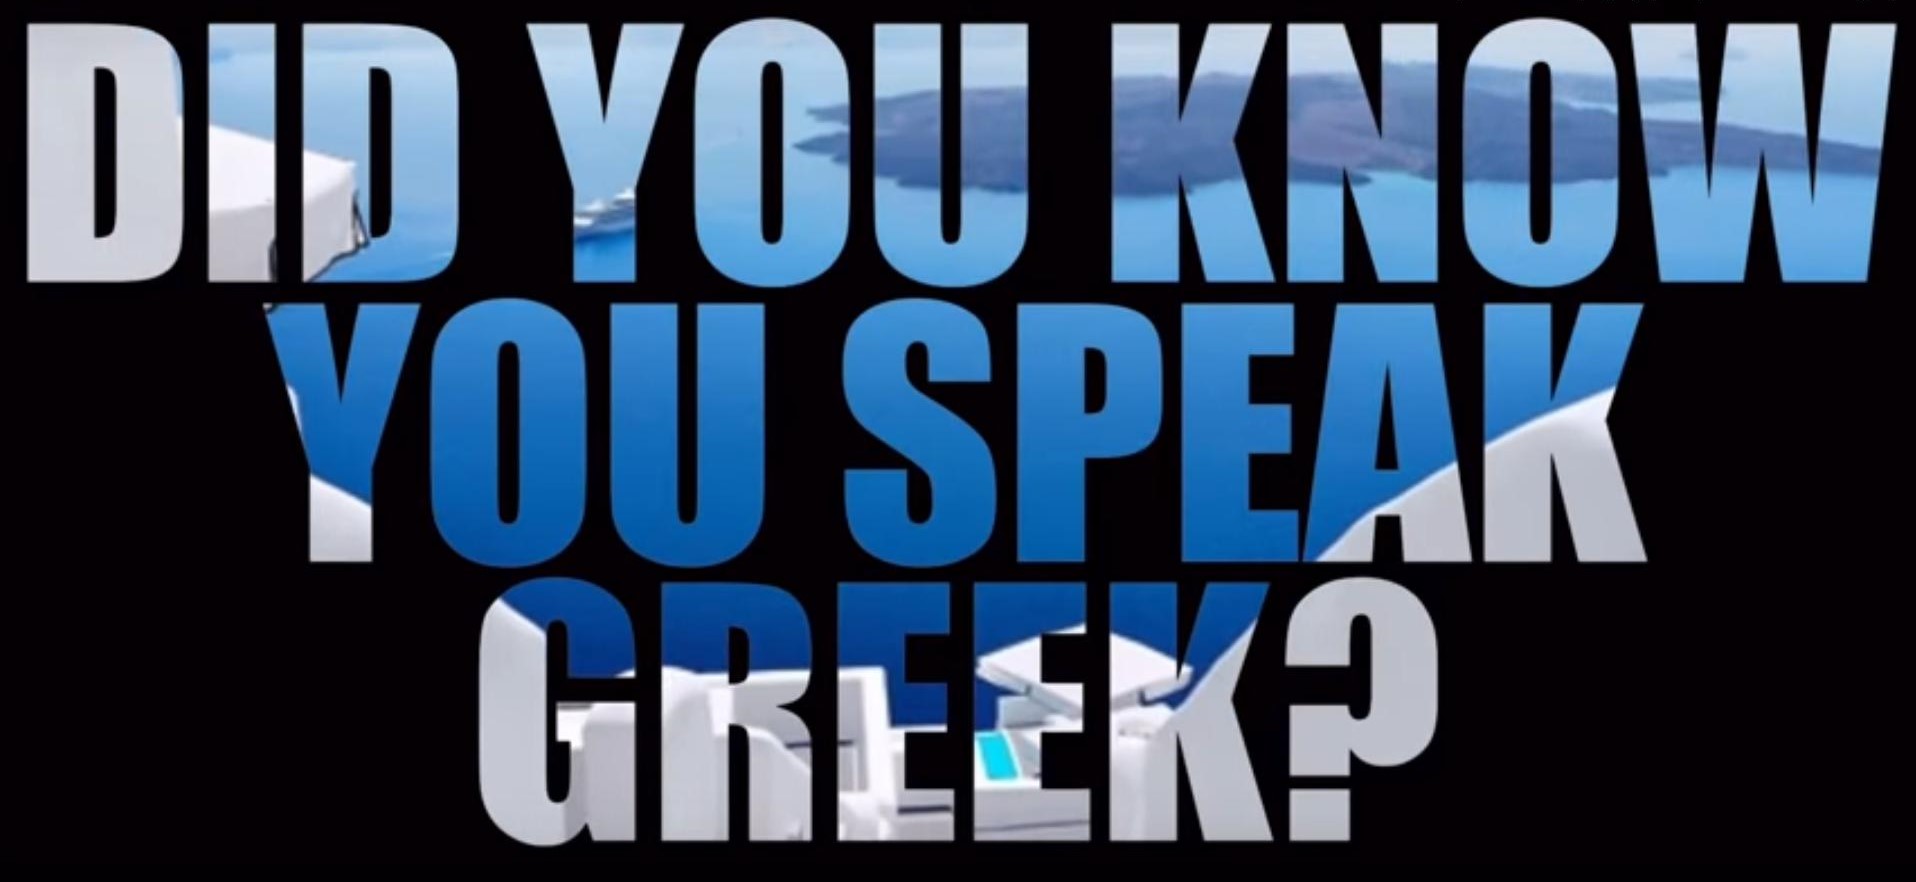 πολλές αγγλικές λέξεις έχουν ελληνικές ρίζες